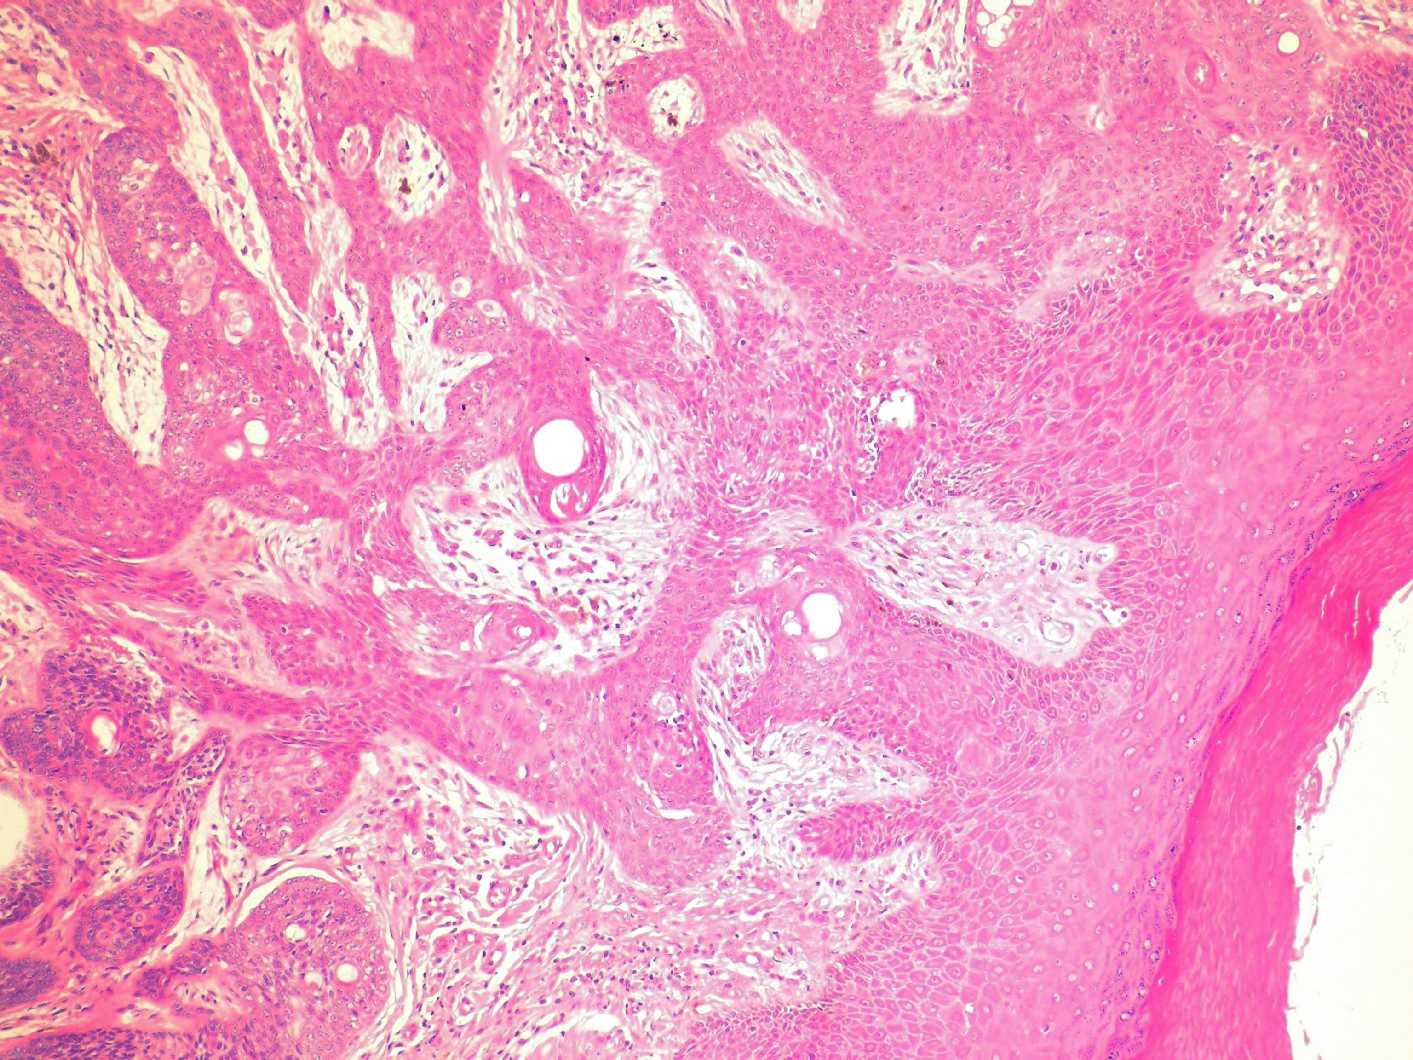 Imagen de Lesin ulcerada en mujer de 76 aos / Ulcerated lesion in 76 y-o female.